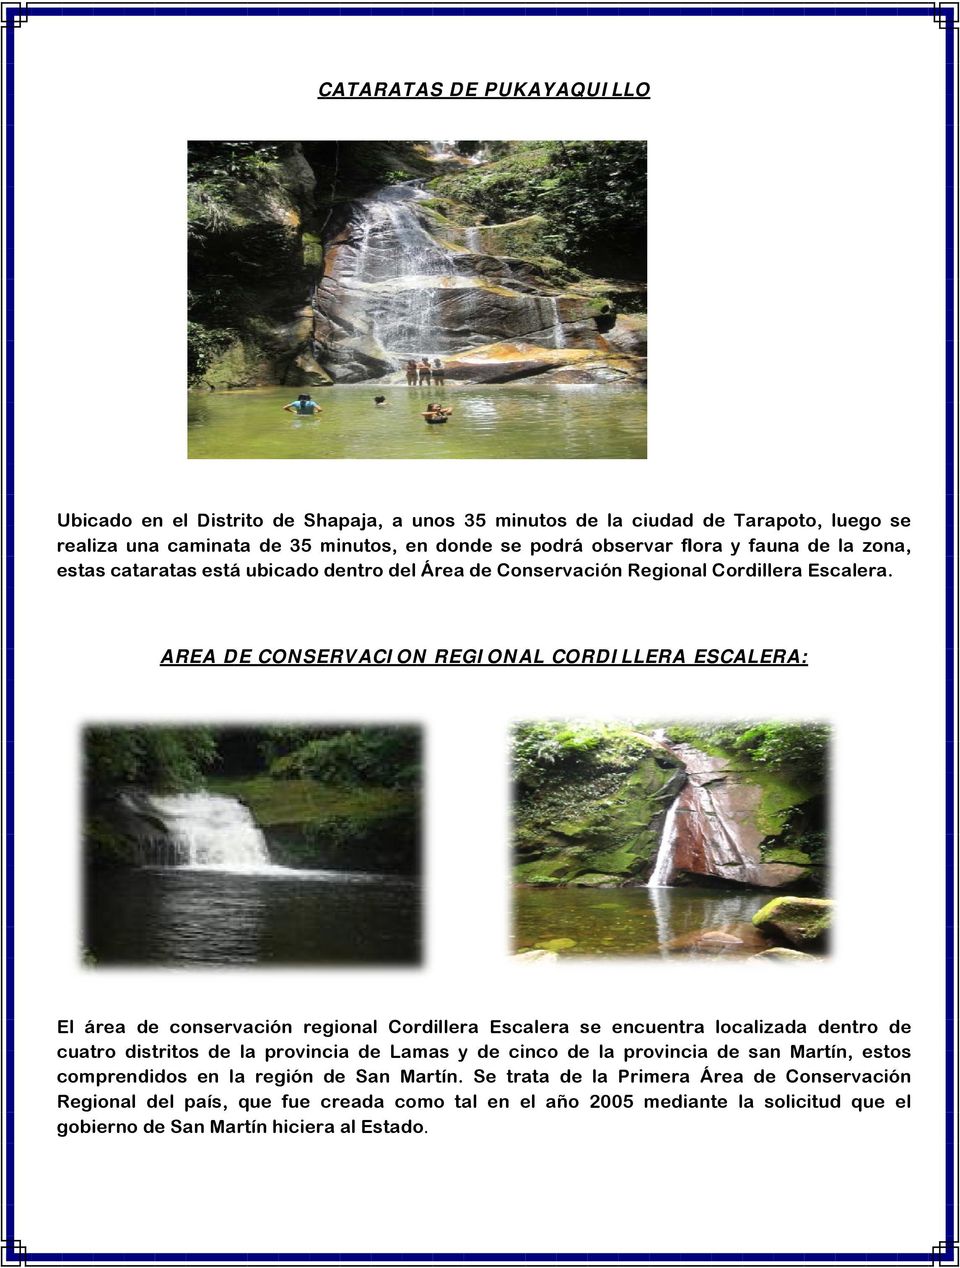 AREA DE CONSERVACION REGIONAL CORDILLERA ESCALERA: El área de conservación regional Cordillera Escalera se encuentra localizada dentro de cuatro distritos de la provincia de Lamas y